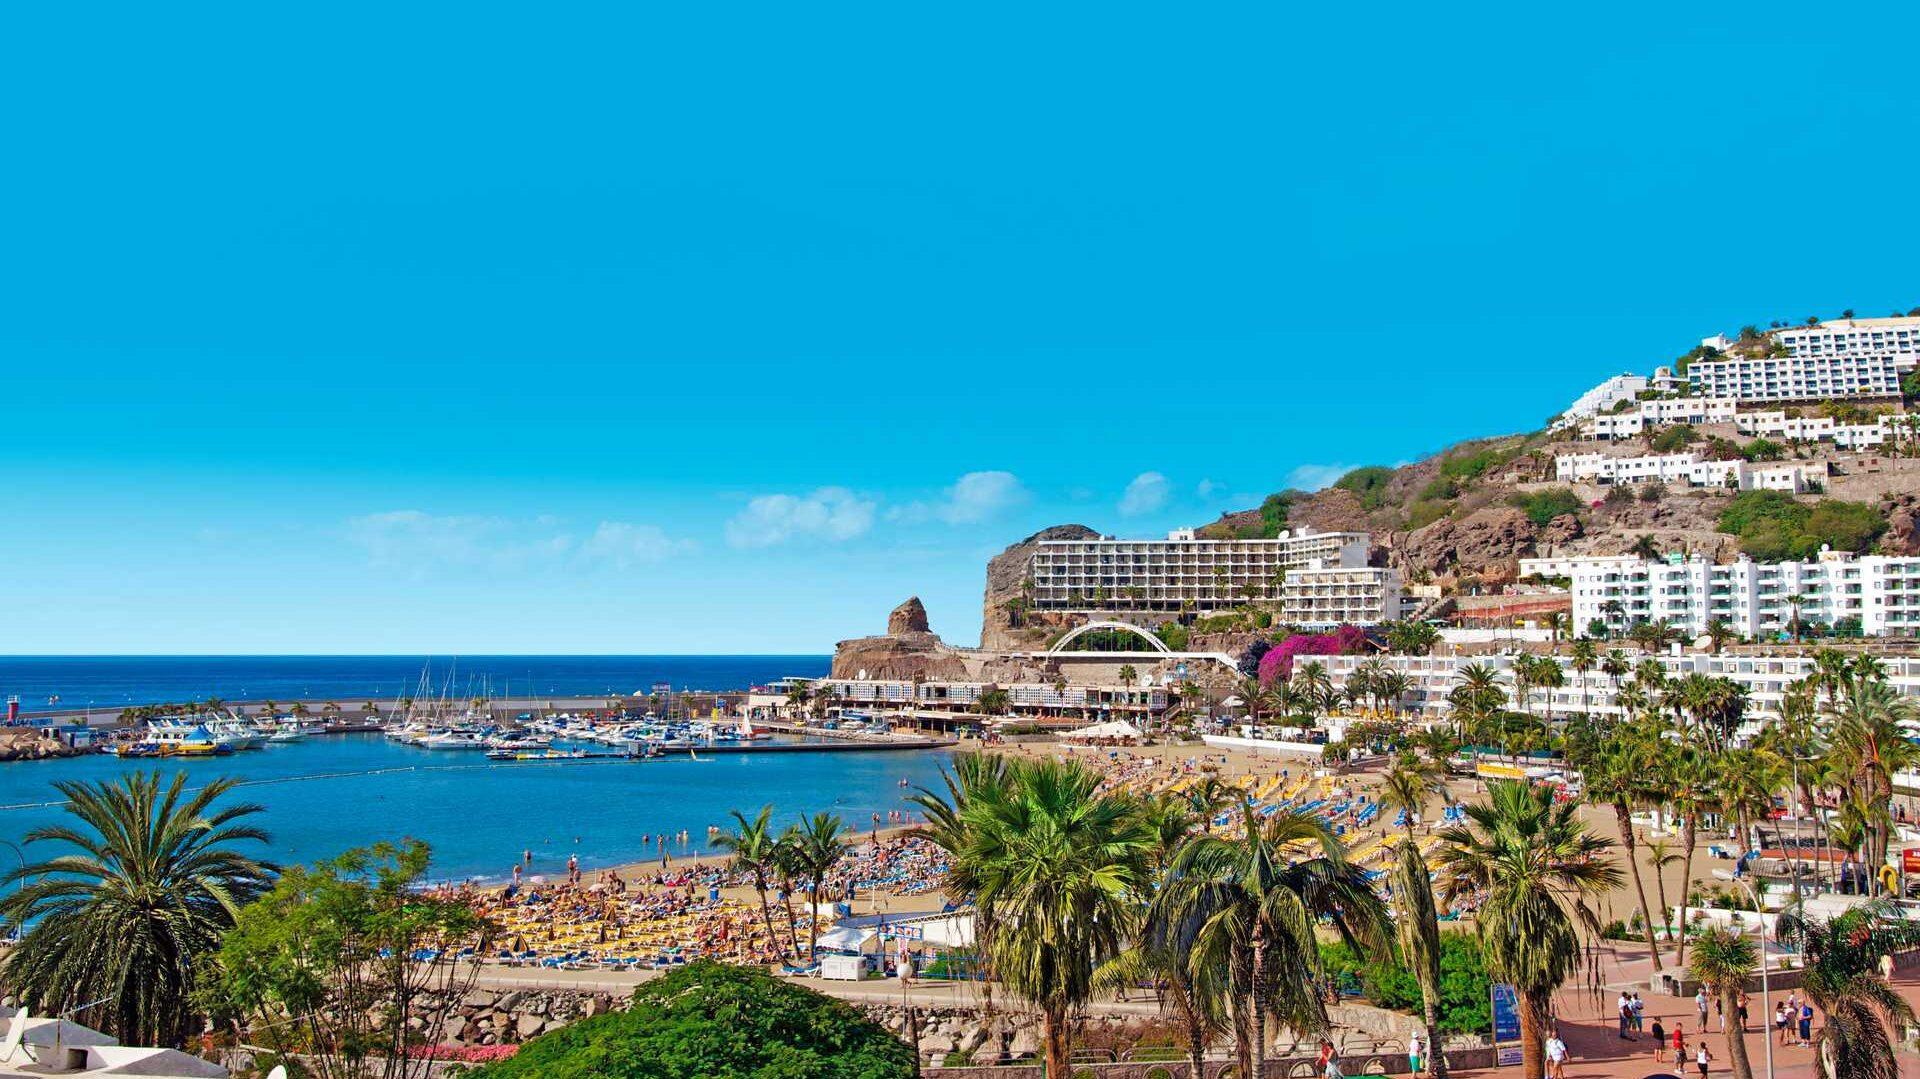 Bilde av Puerto Rico Gran Canaria - Dette er stedet nordmenn helst vil bo på ferieøya. på bilde ser vu landskapet med hoteller, solsenger, strand og krystallblått hav.